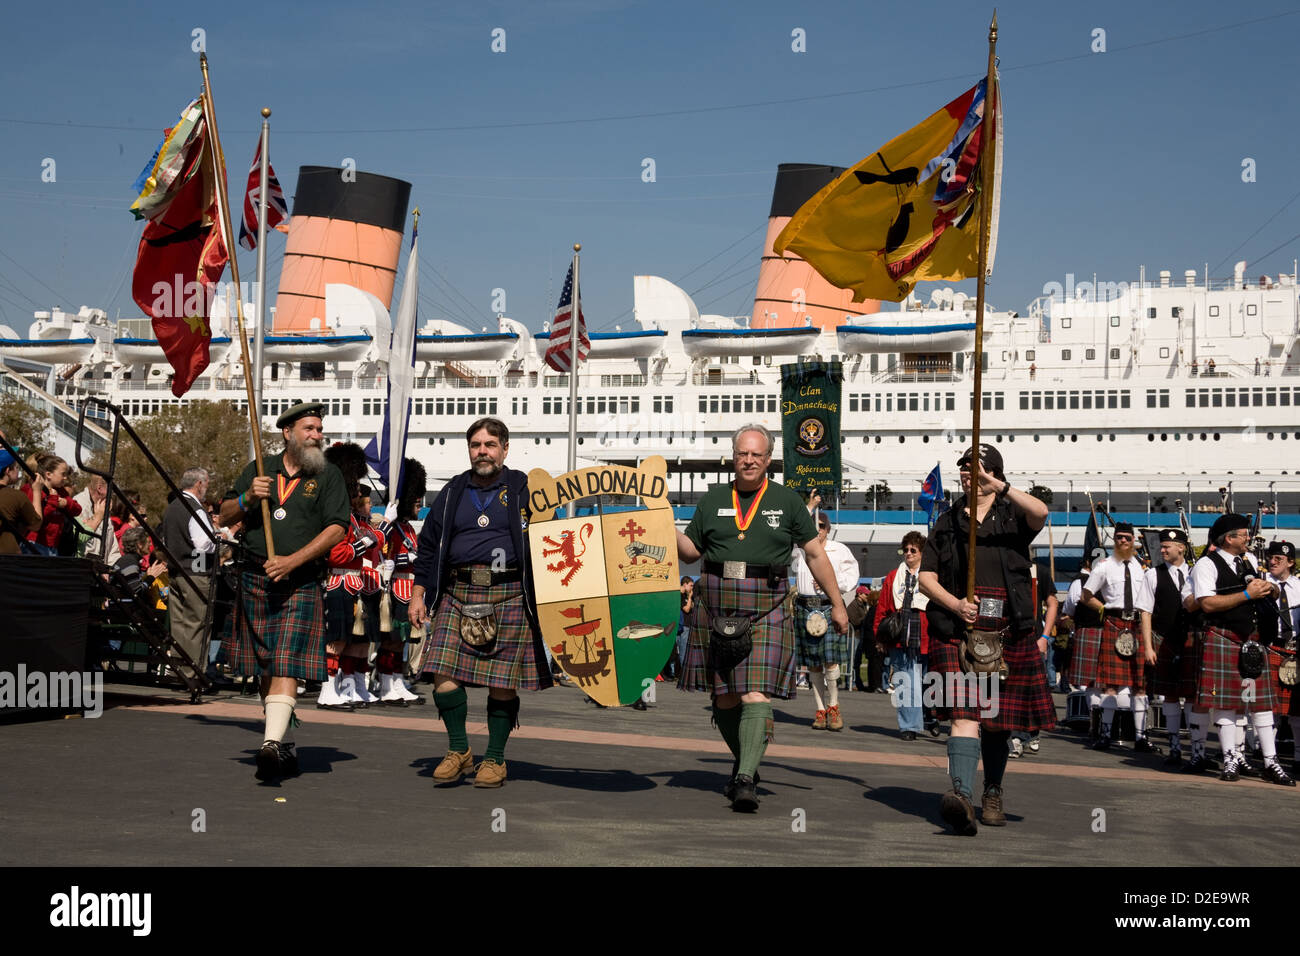 Grande Parade des clans à l'Scotsfest festival écossais du Queen Mary à Long Beach, CA Banque D'Images